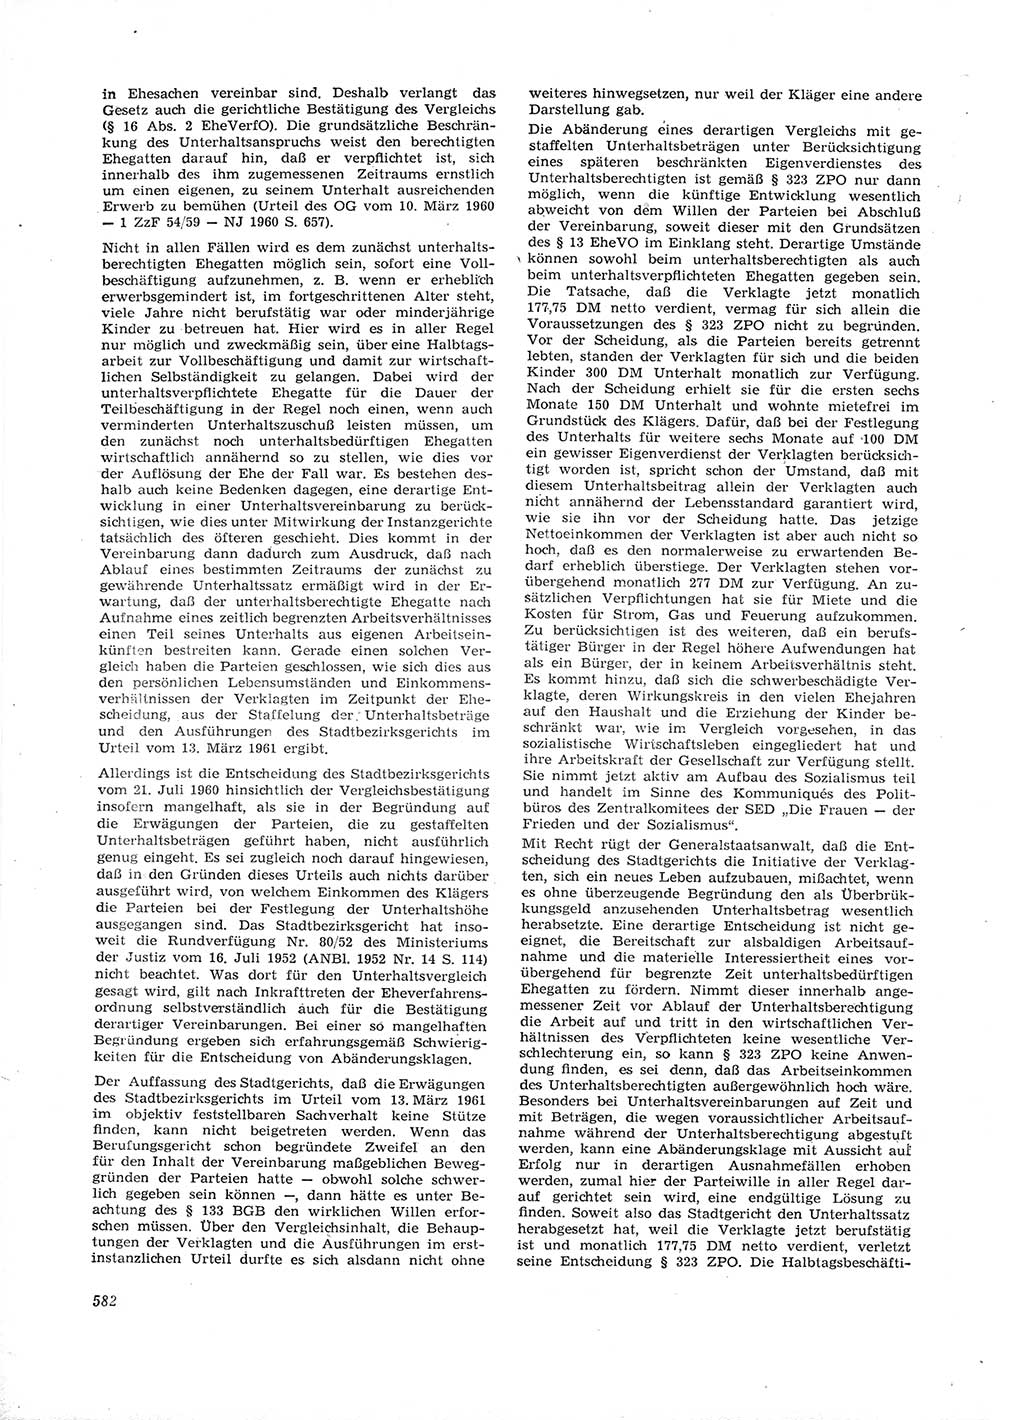 Neue Justiz (NJ), Zeitschrift für Recht und Rechtswissenschaft [Deutsche Demokratische Republik (DDR)], 16. Jahrgang 1962, Seite 582 (NJ DDR 1962, S. 582)